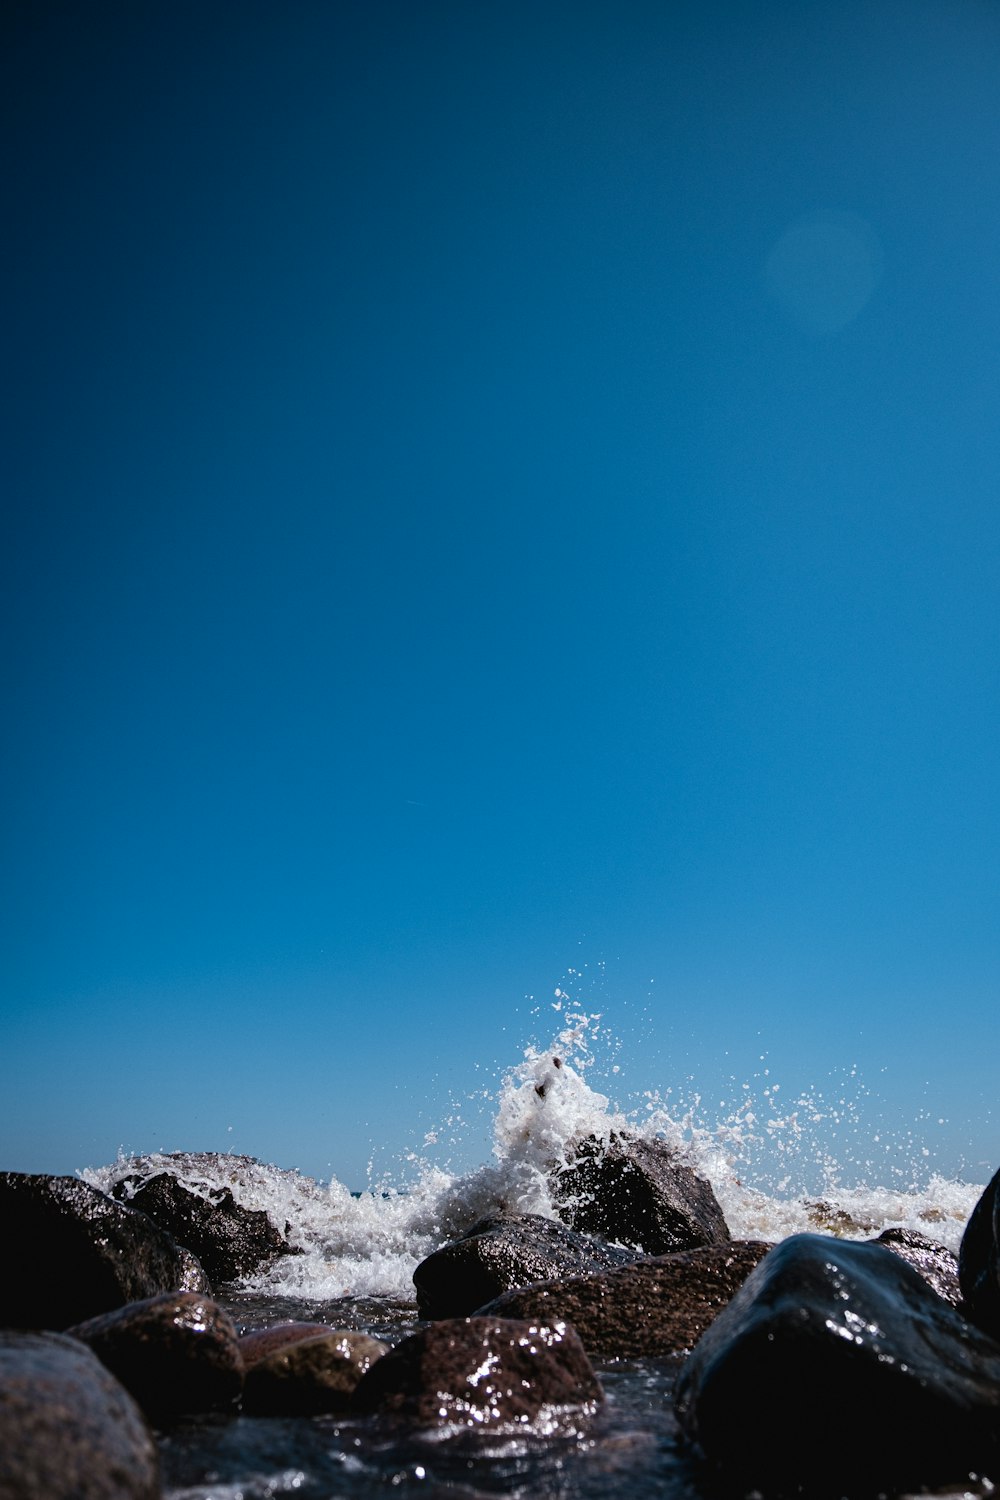 Un homme sur une planche de surf au sommet d’une vague